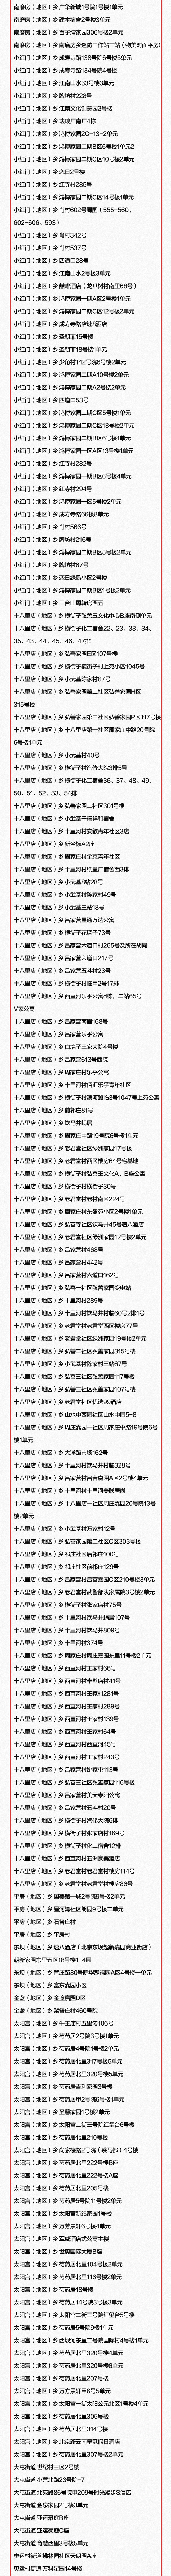 北京发布大风黄色预警信号局地阵风可达9级以上80年代的小学课文有哪些